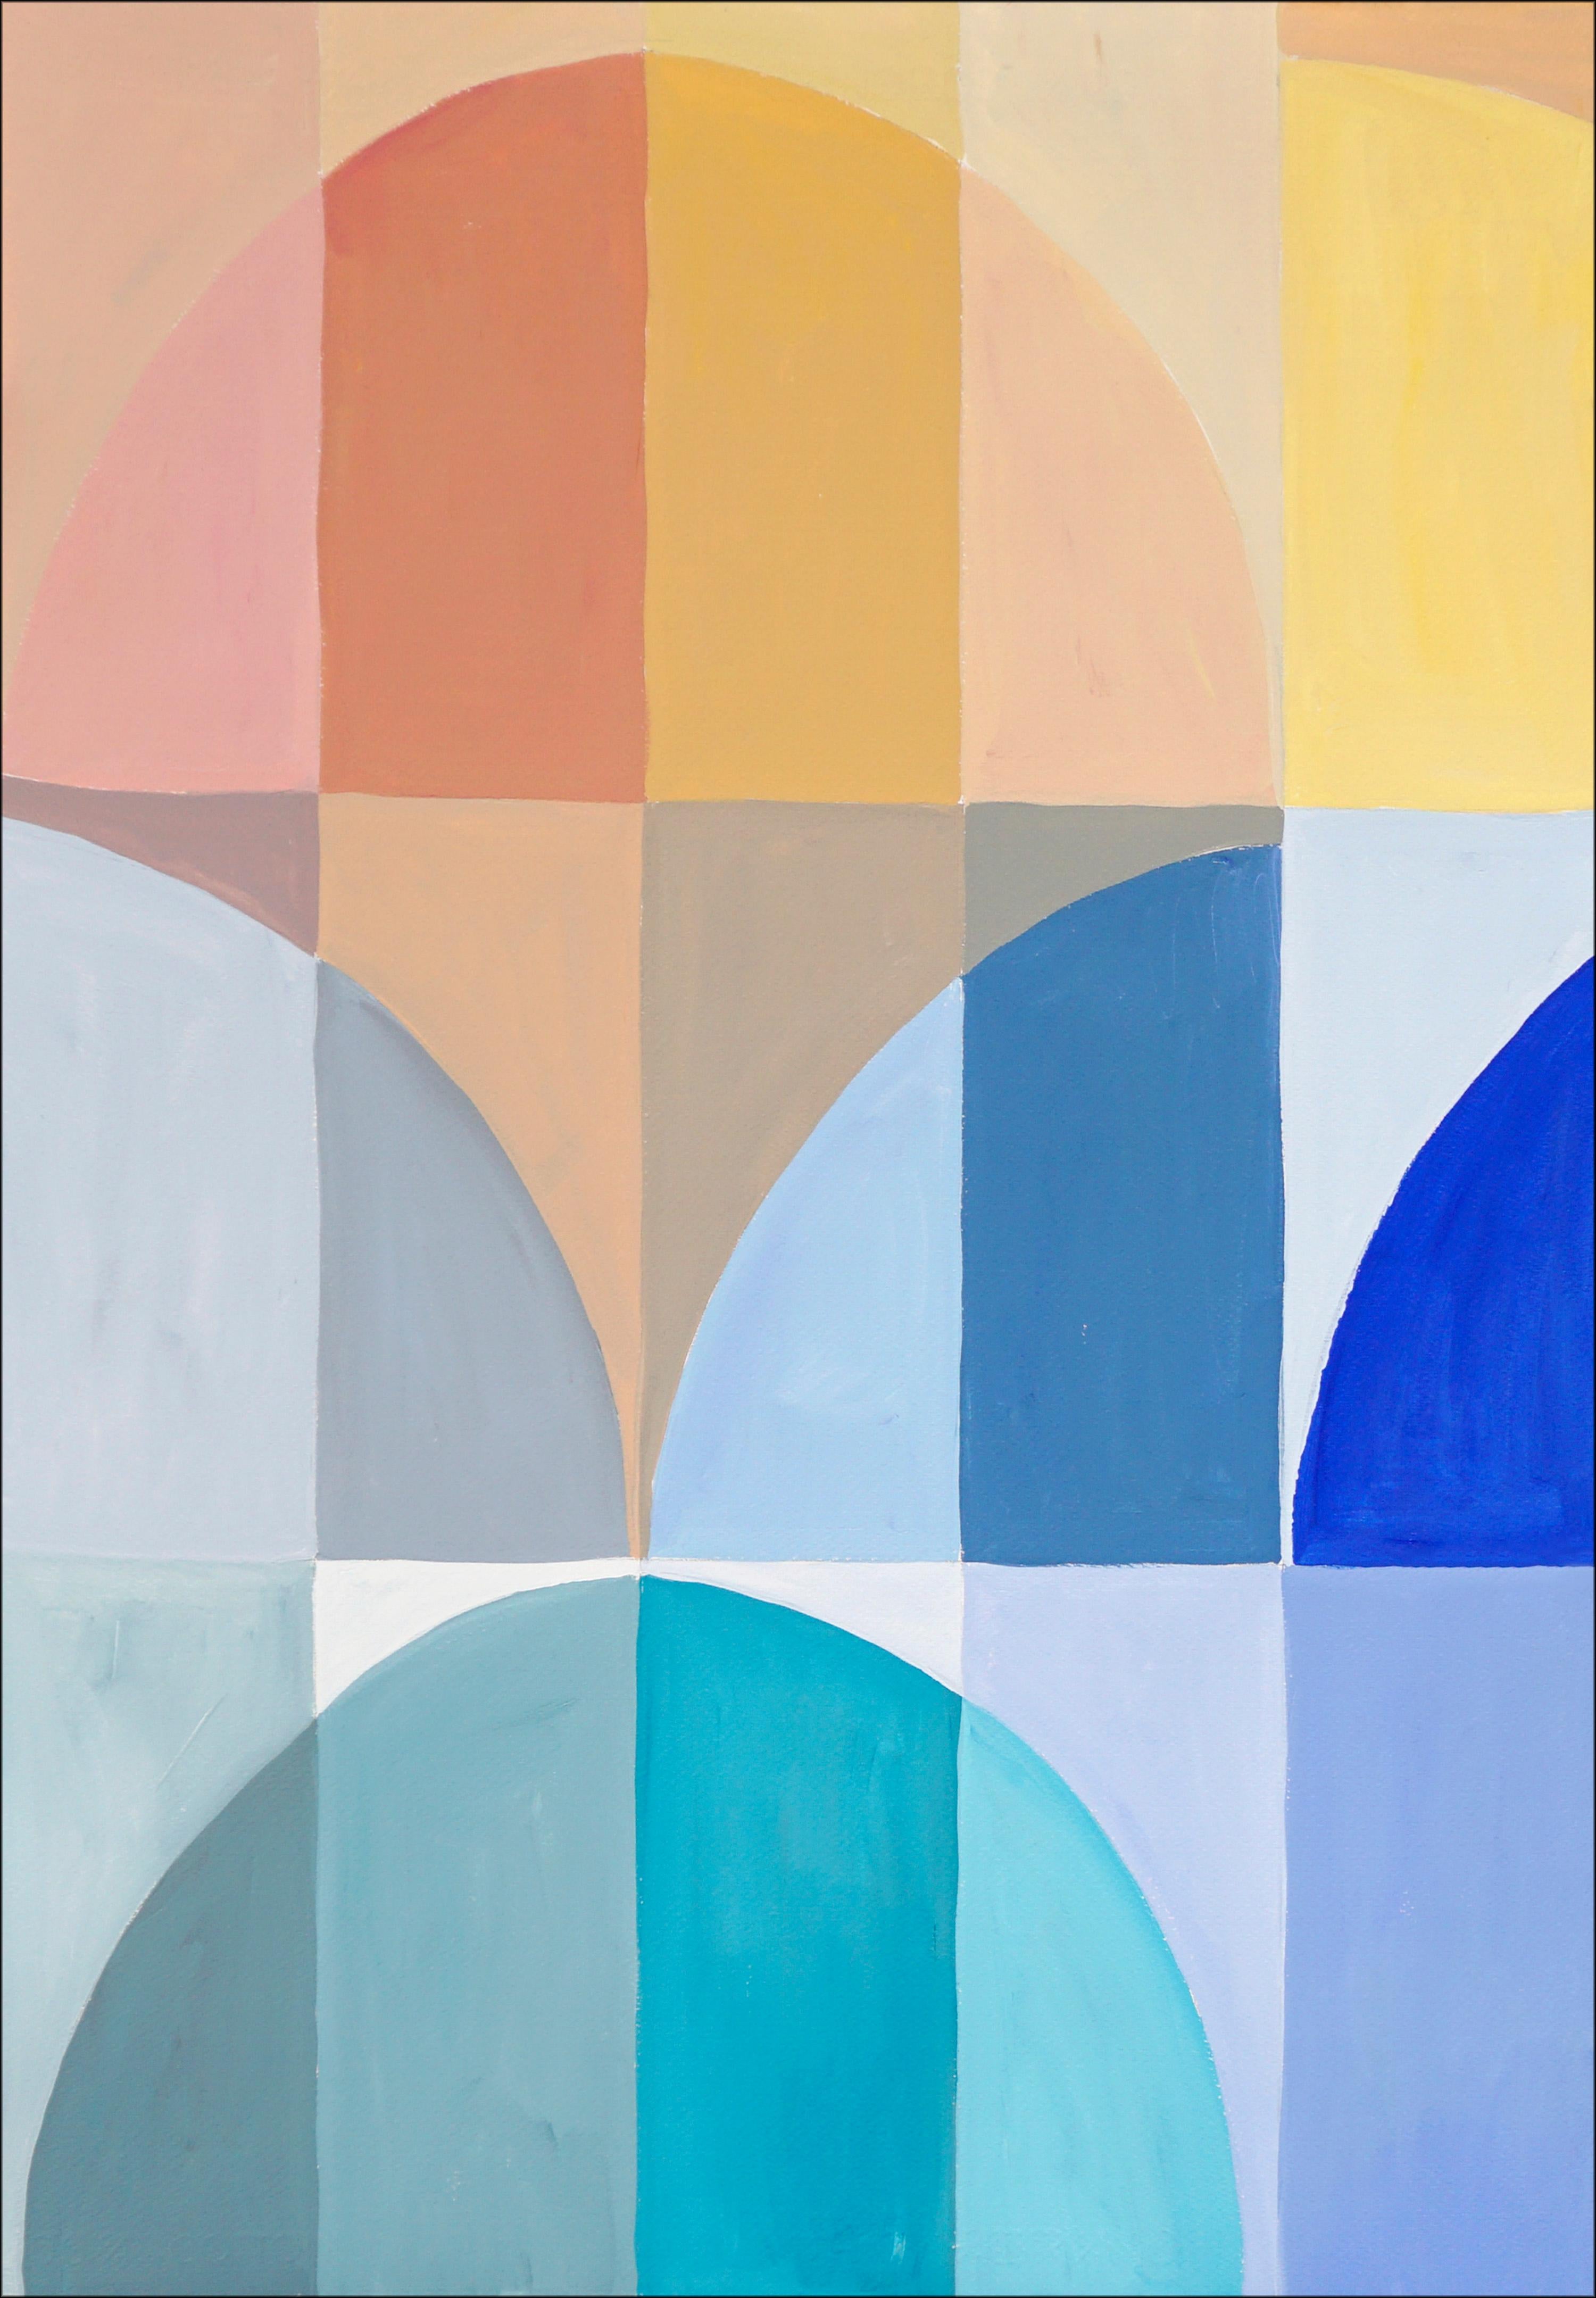 Abstract Painting Natalia Roman - Oasis in The Desert, paysage géométrique abstrait en vert, bleu et tons terreux 